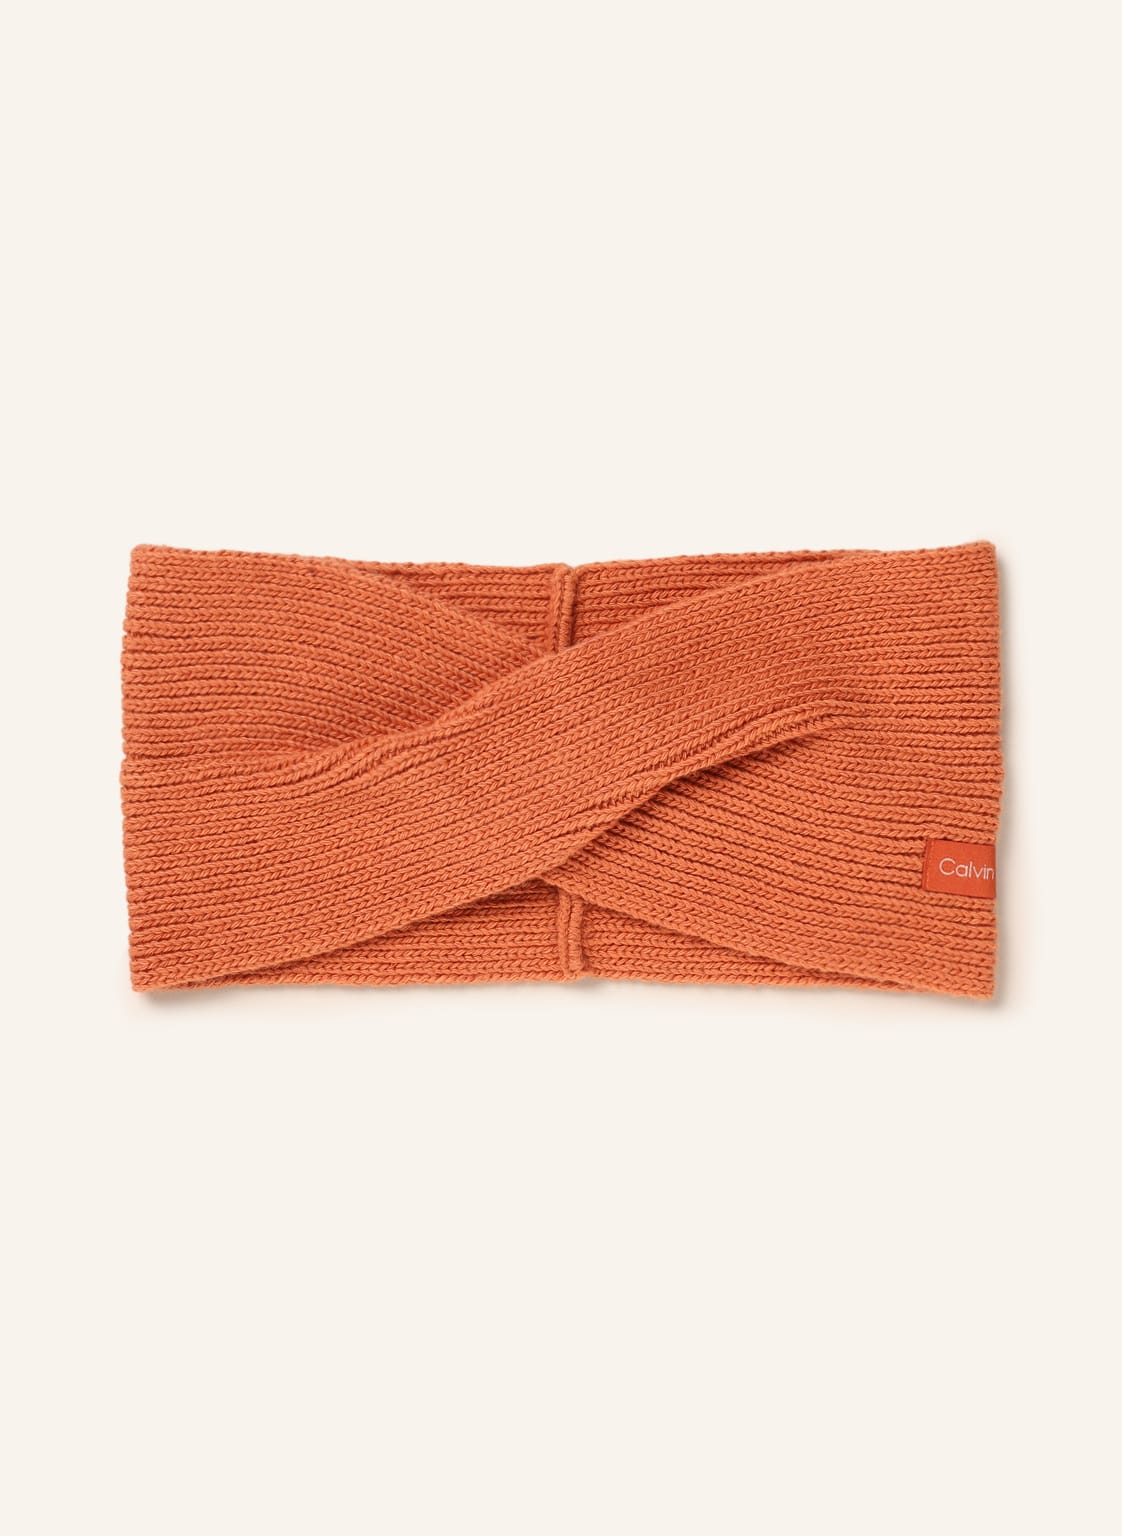 Calvin Klein Stirnband orange von Calvin Klein